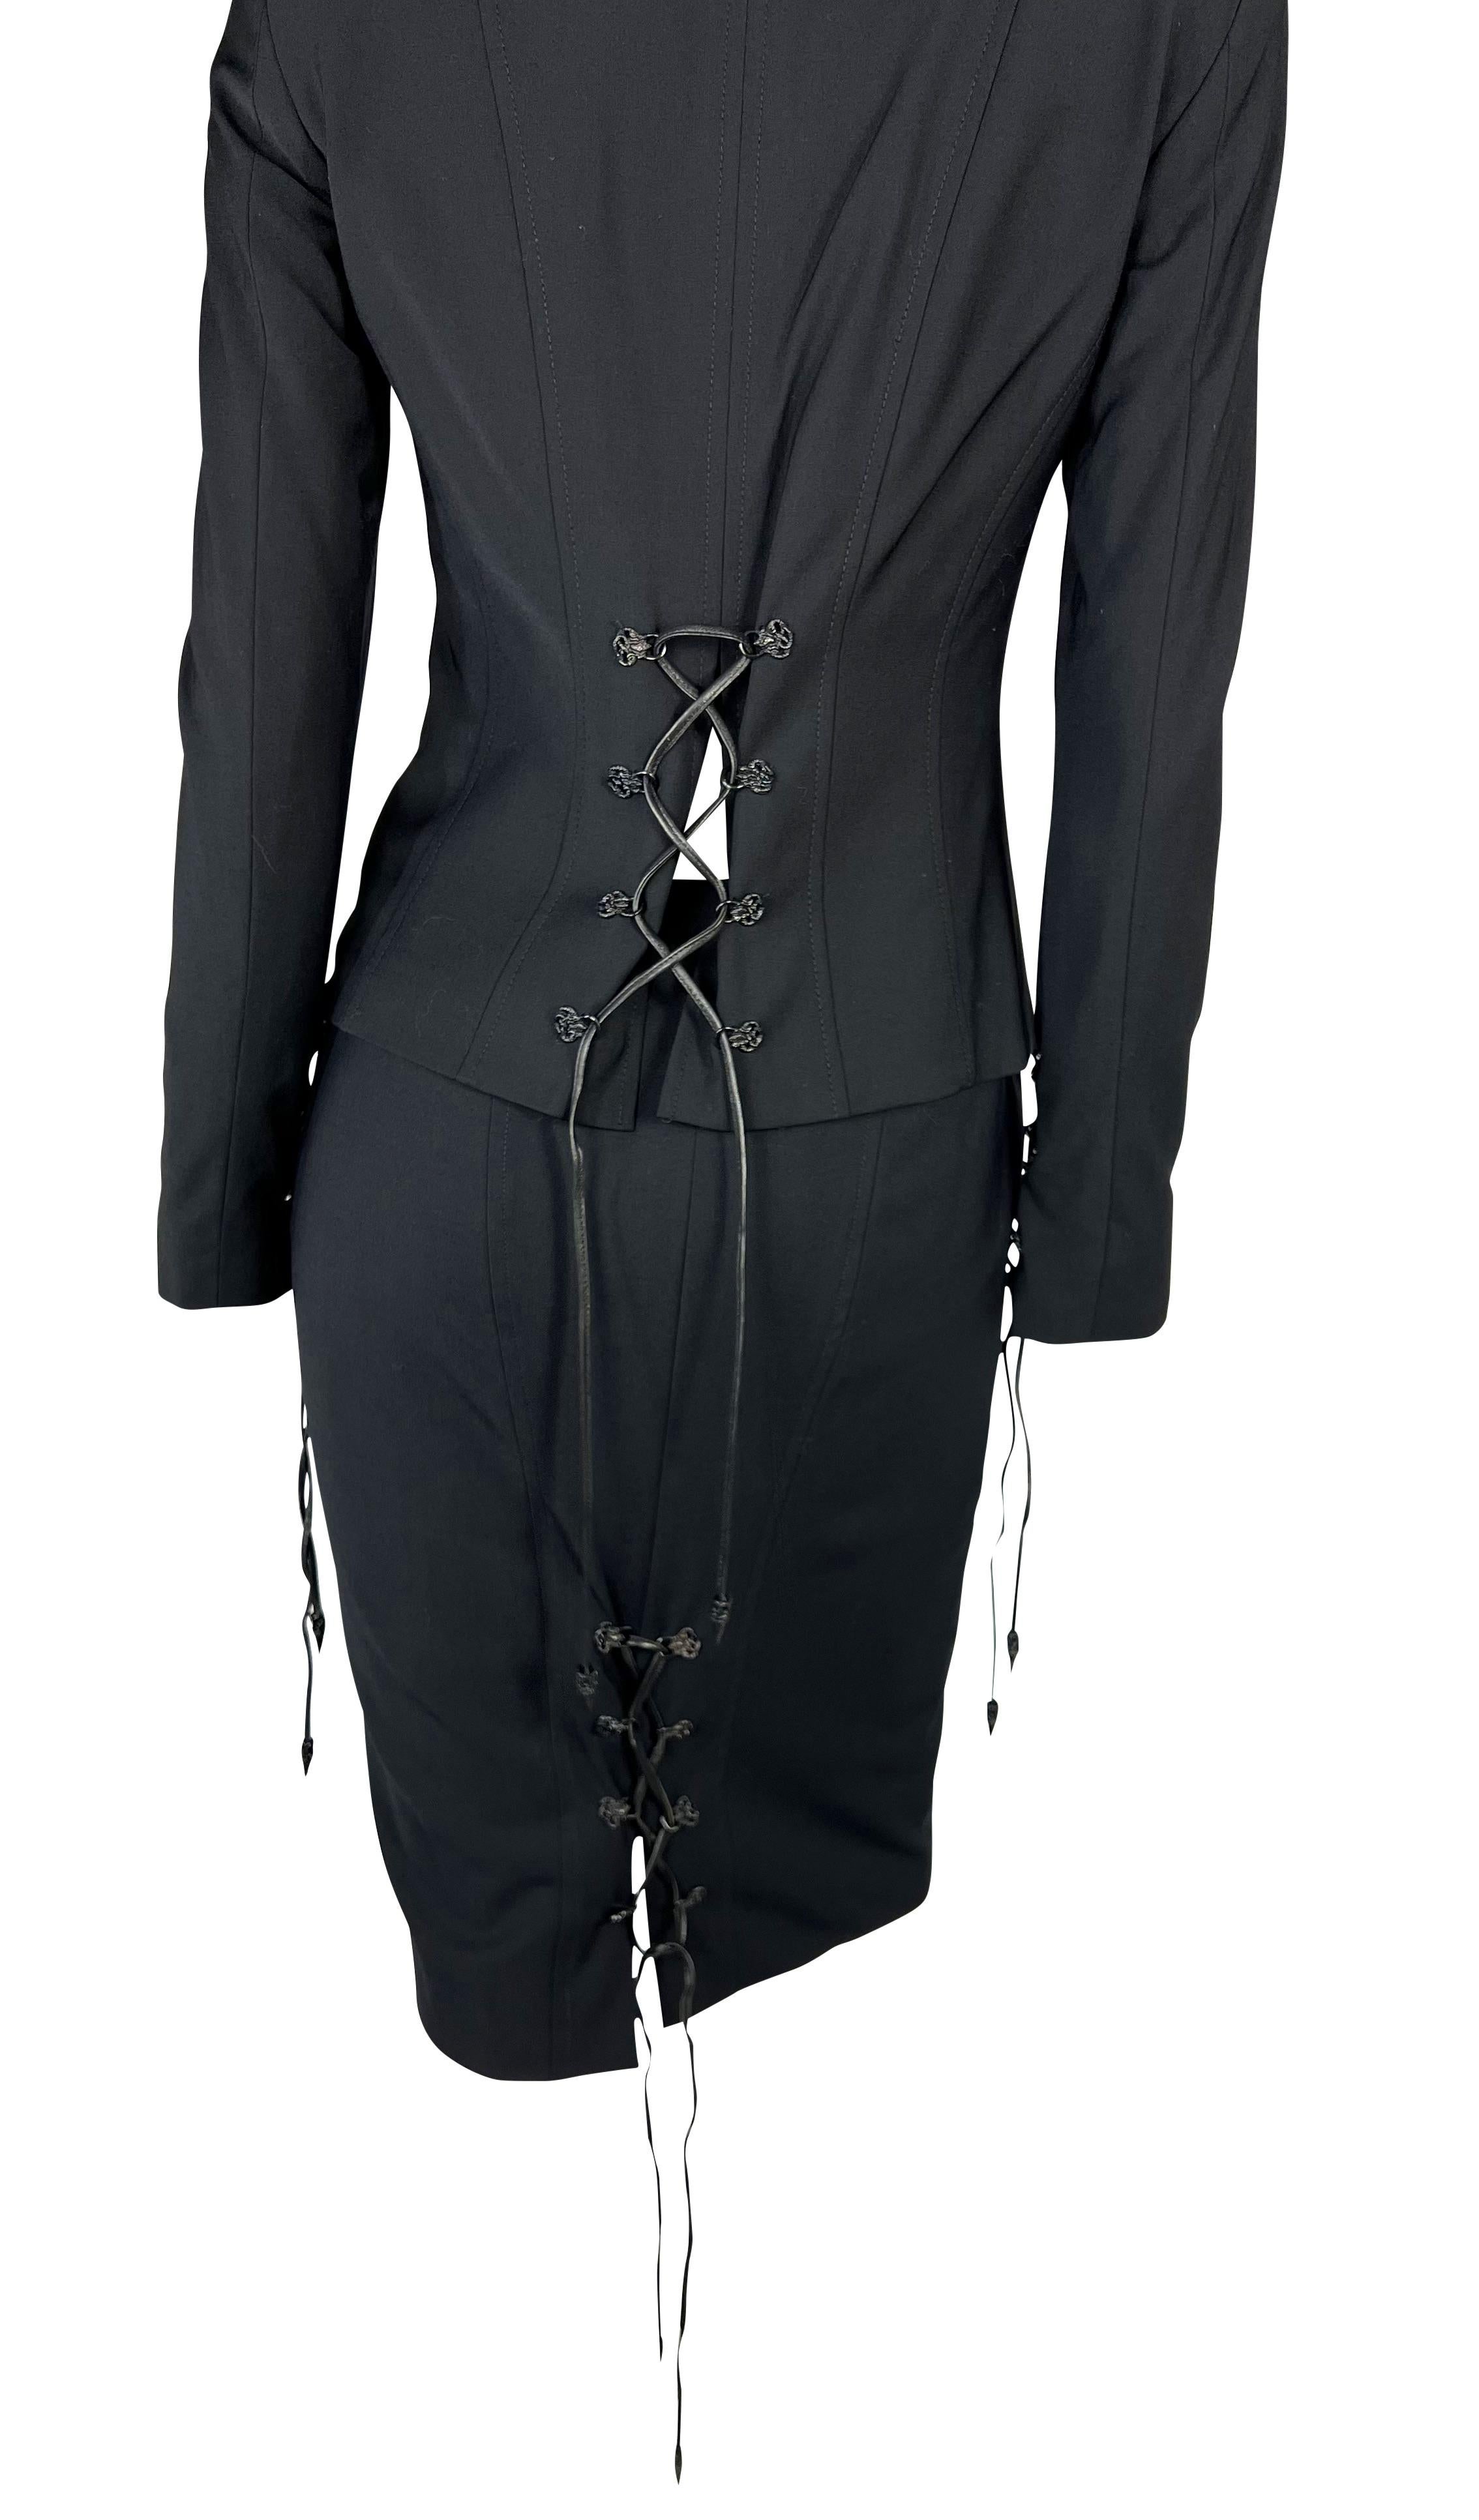 Nous vous présentons un incroyable ensemble de tailleur jupe Versace noir à lacets, dessiné par Donatella Versace. Issu de la collection automne/hiver 2003, ce fabuleux ensemble se compose d'une veste zippée noire et d'une jupe assortie. La veste